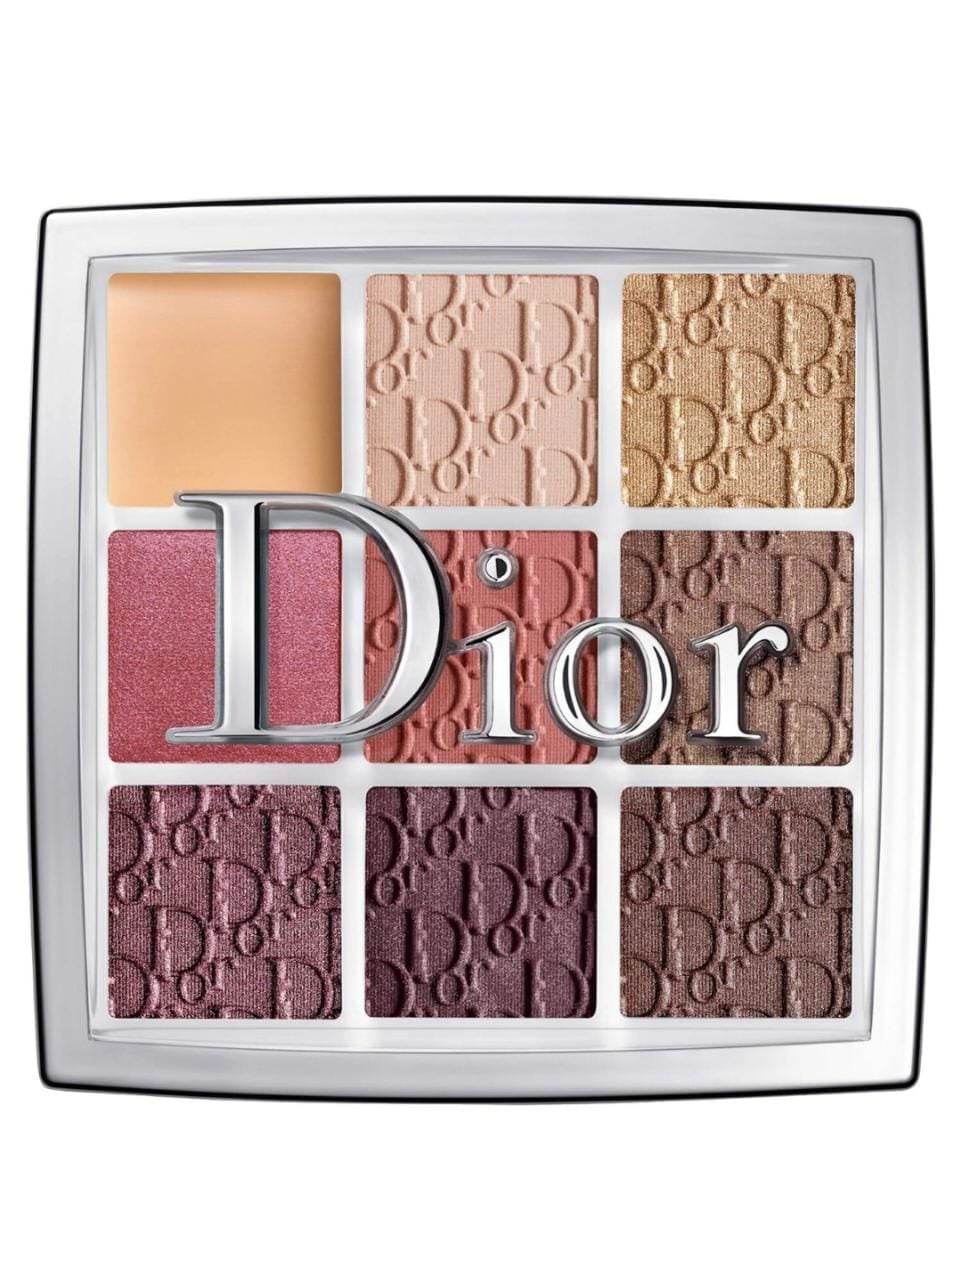 Dior Backstage Eyeshadow Palette, 004 Rosewood Neutrals